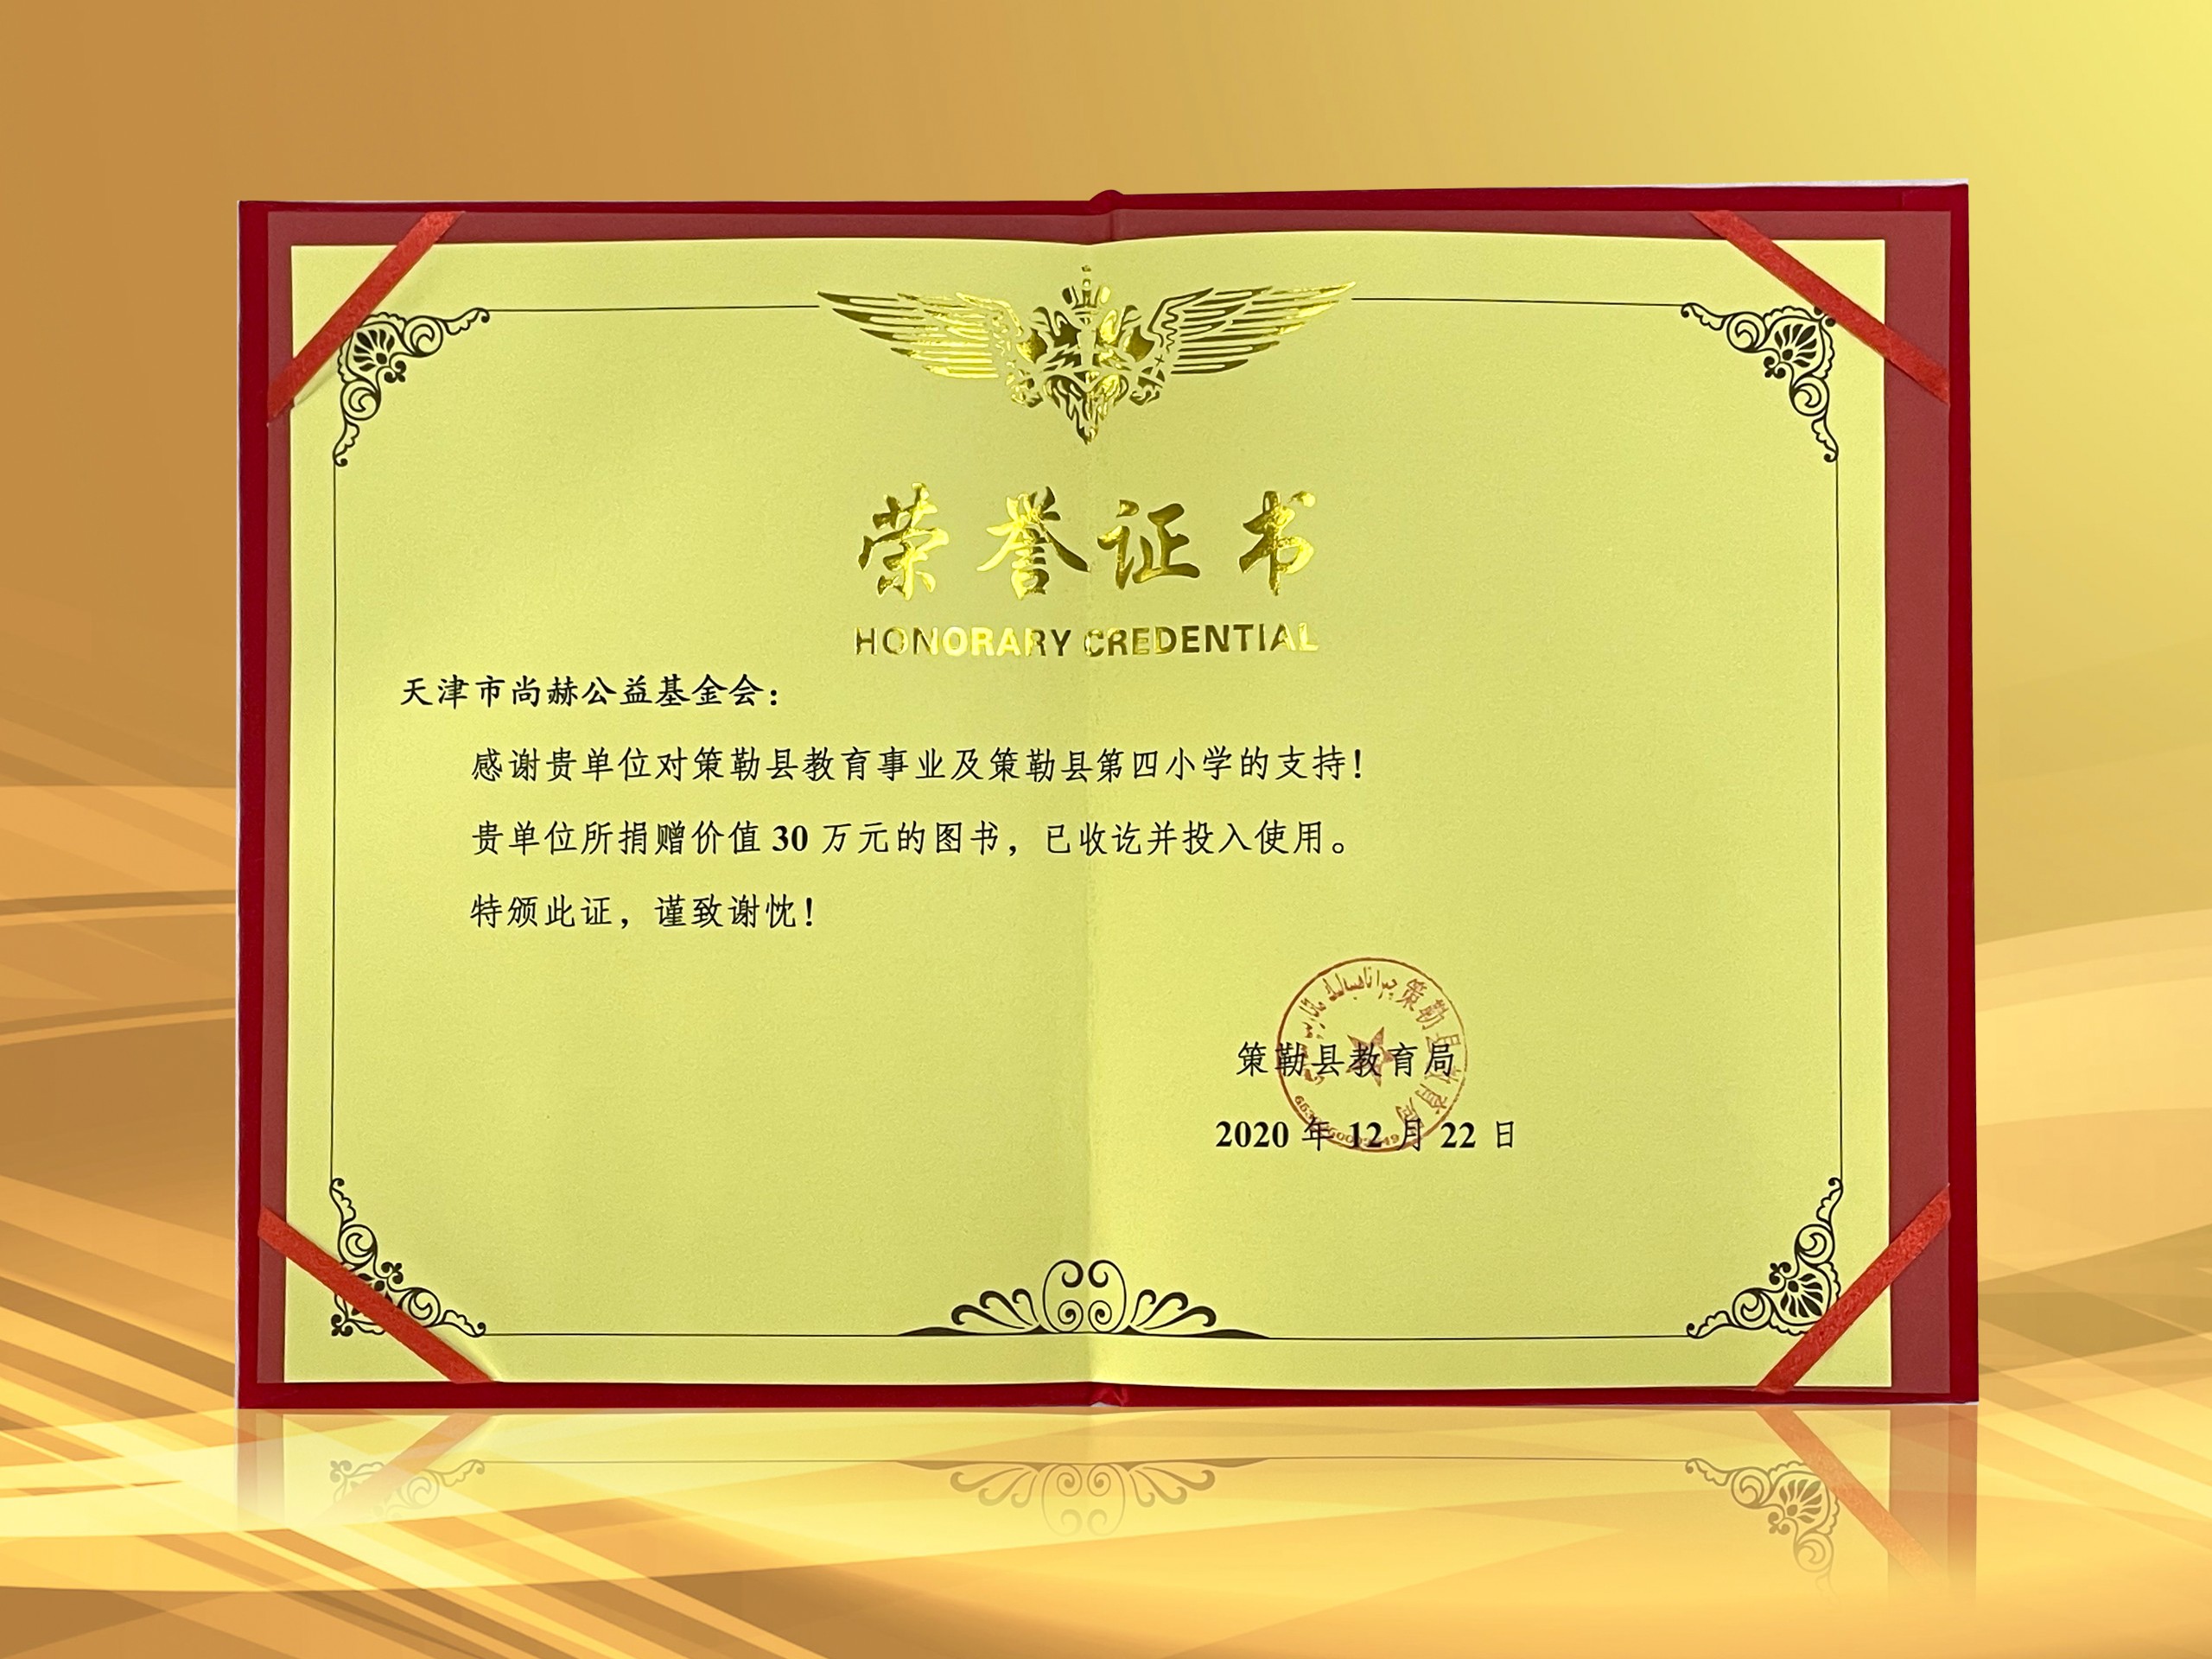 3月-皇家体育(中国)有限责任公司公益基金会收到新疆策勒县教育局授予的荣誉证书